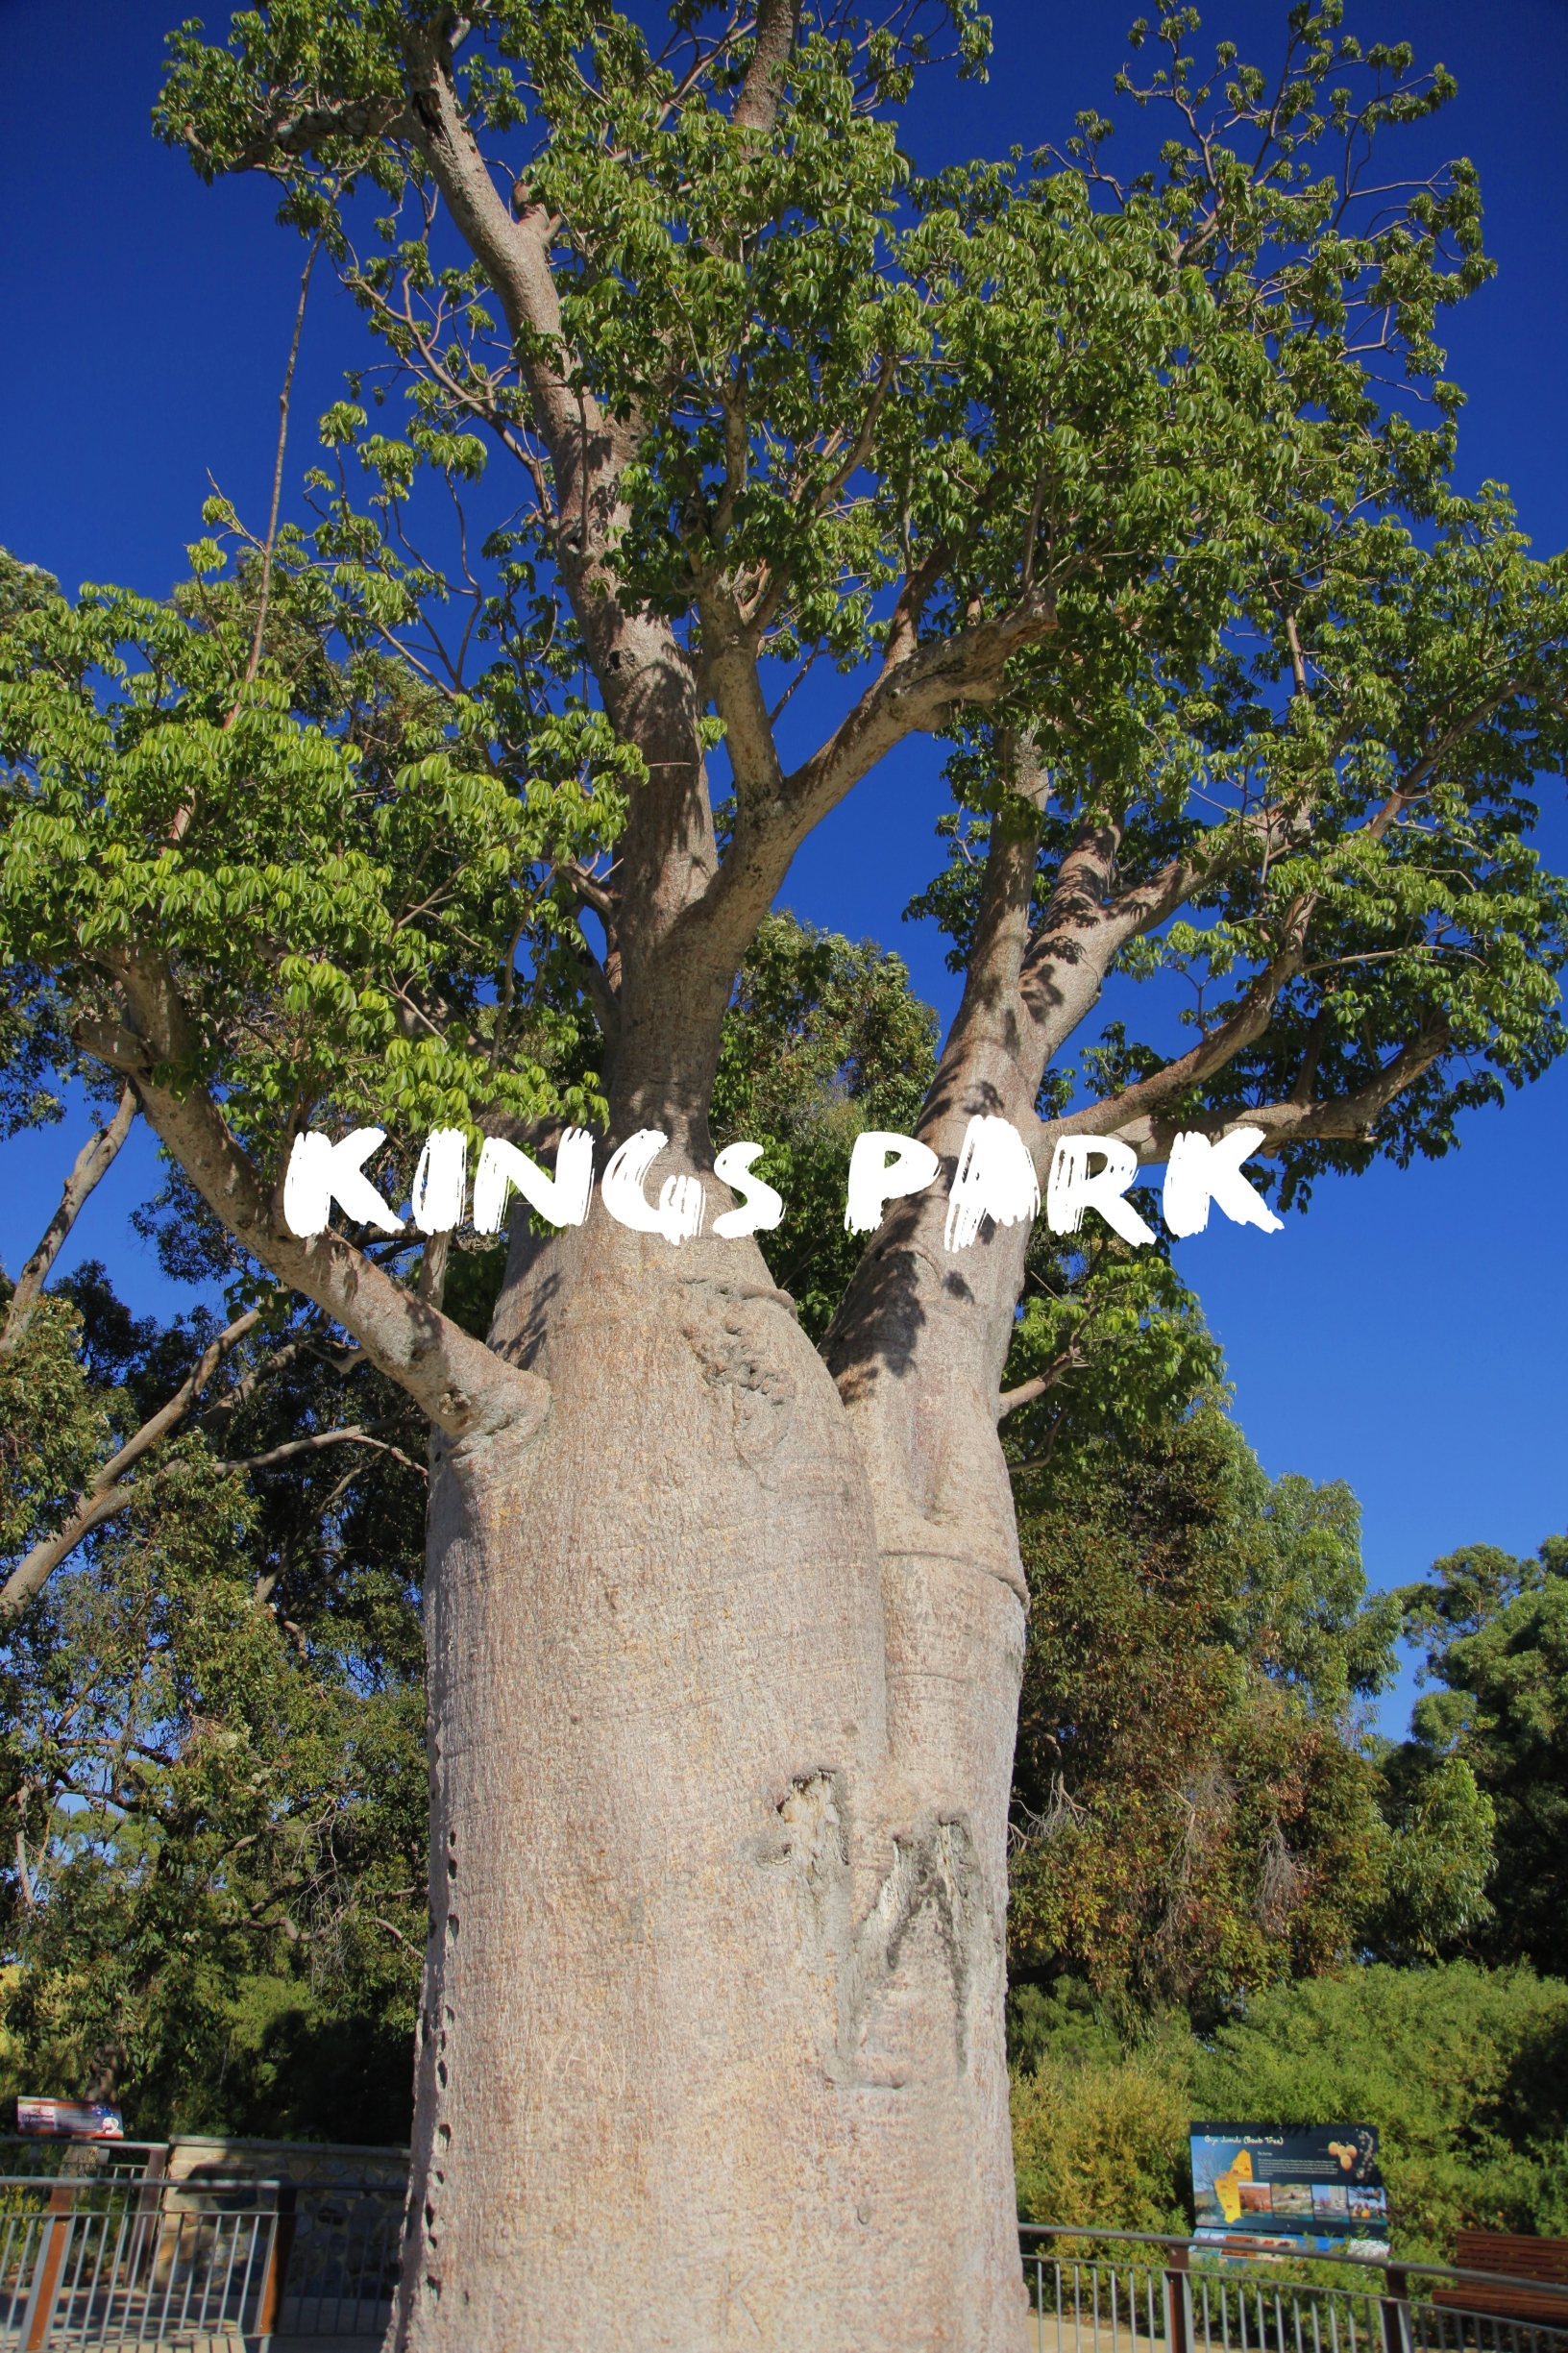 澳大利亚旅行|珀斯国王公园|Kings Park